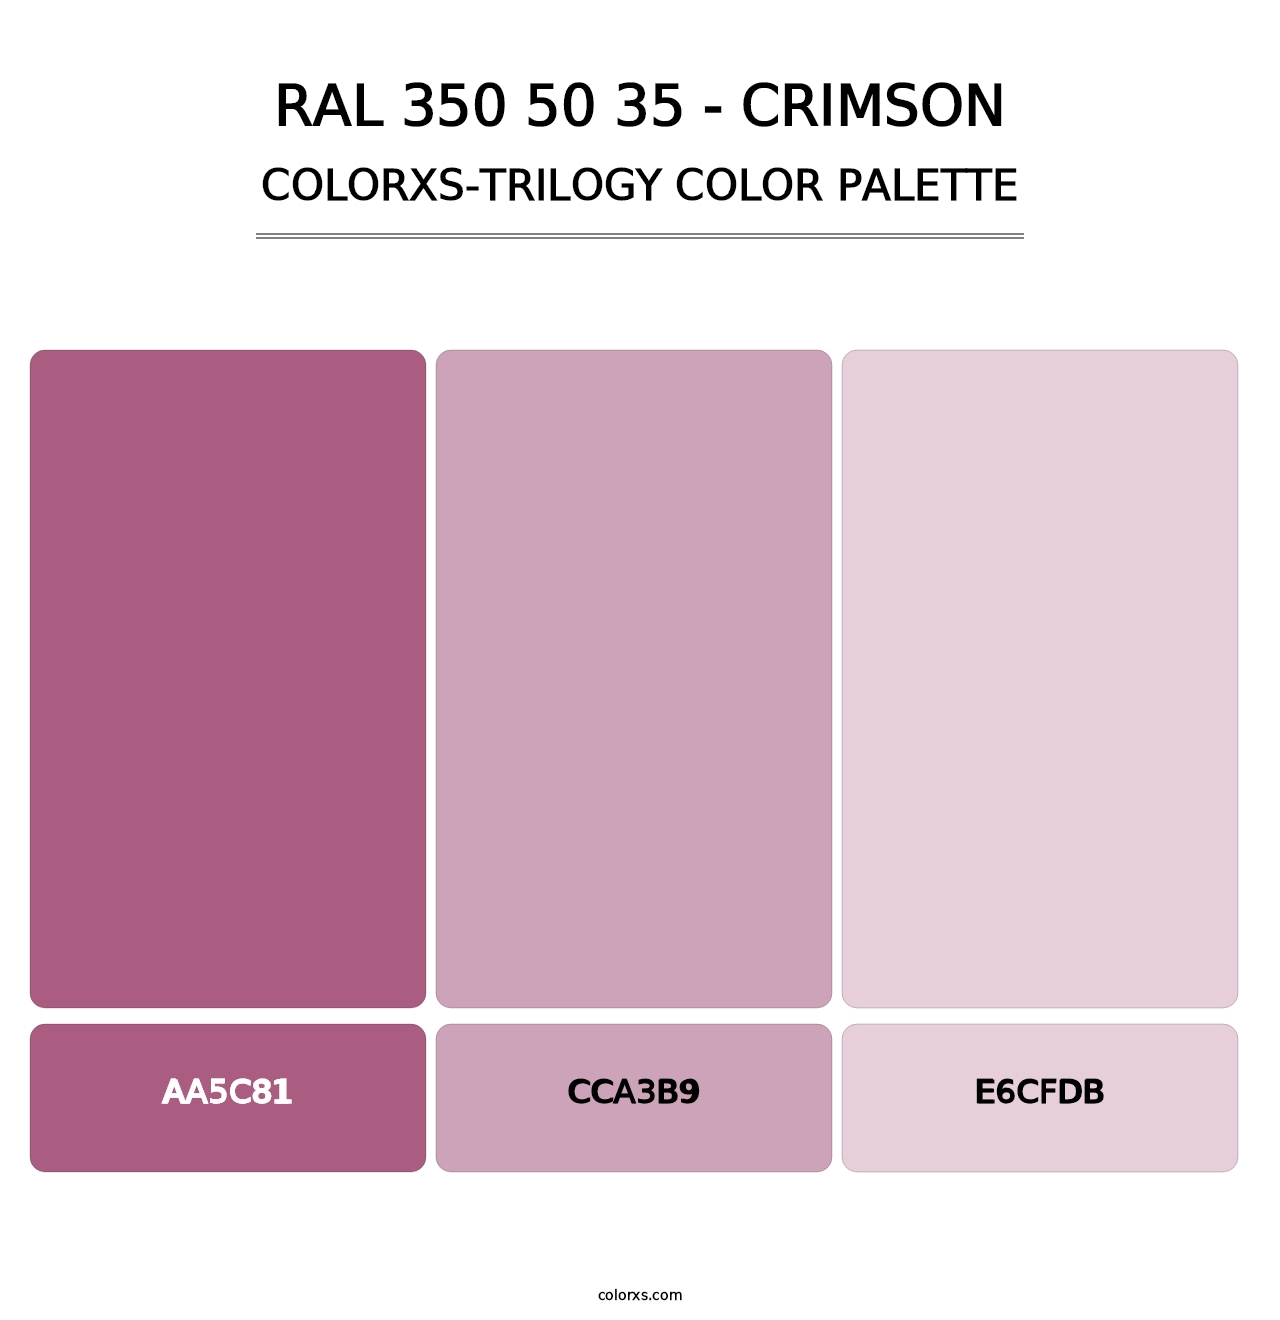 RAL 350 50 35 - Crimson - Colorxs Trilogy Palette